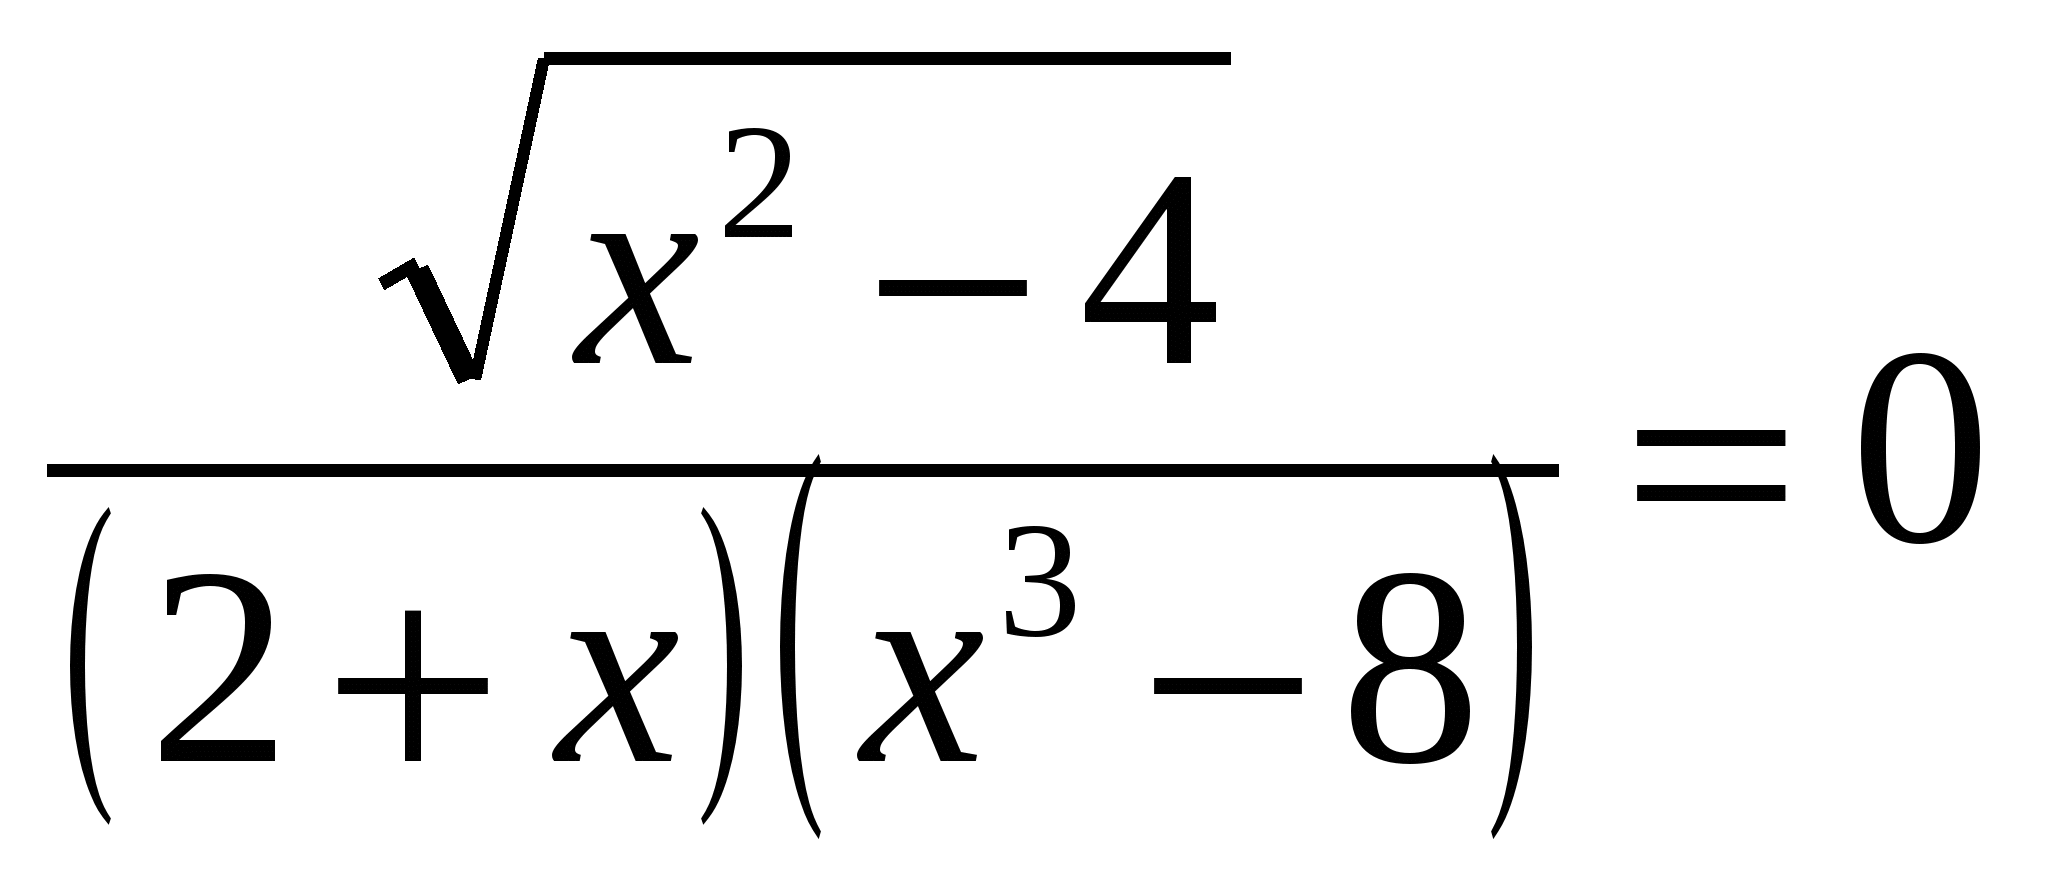 Самый сложный пример в математике в мире. Математические уравнения 11 класс. Сложное математическое уравнение. Примеры для 11 класса по математике. Сложные уравнения.